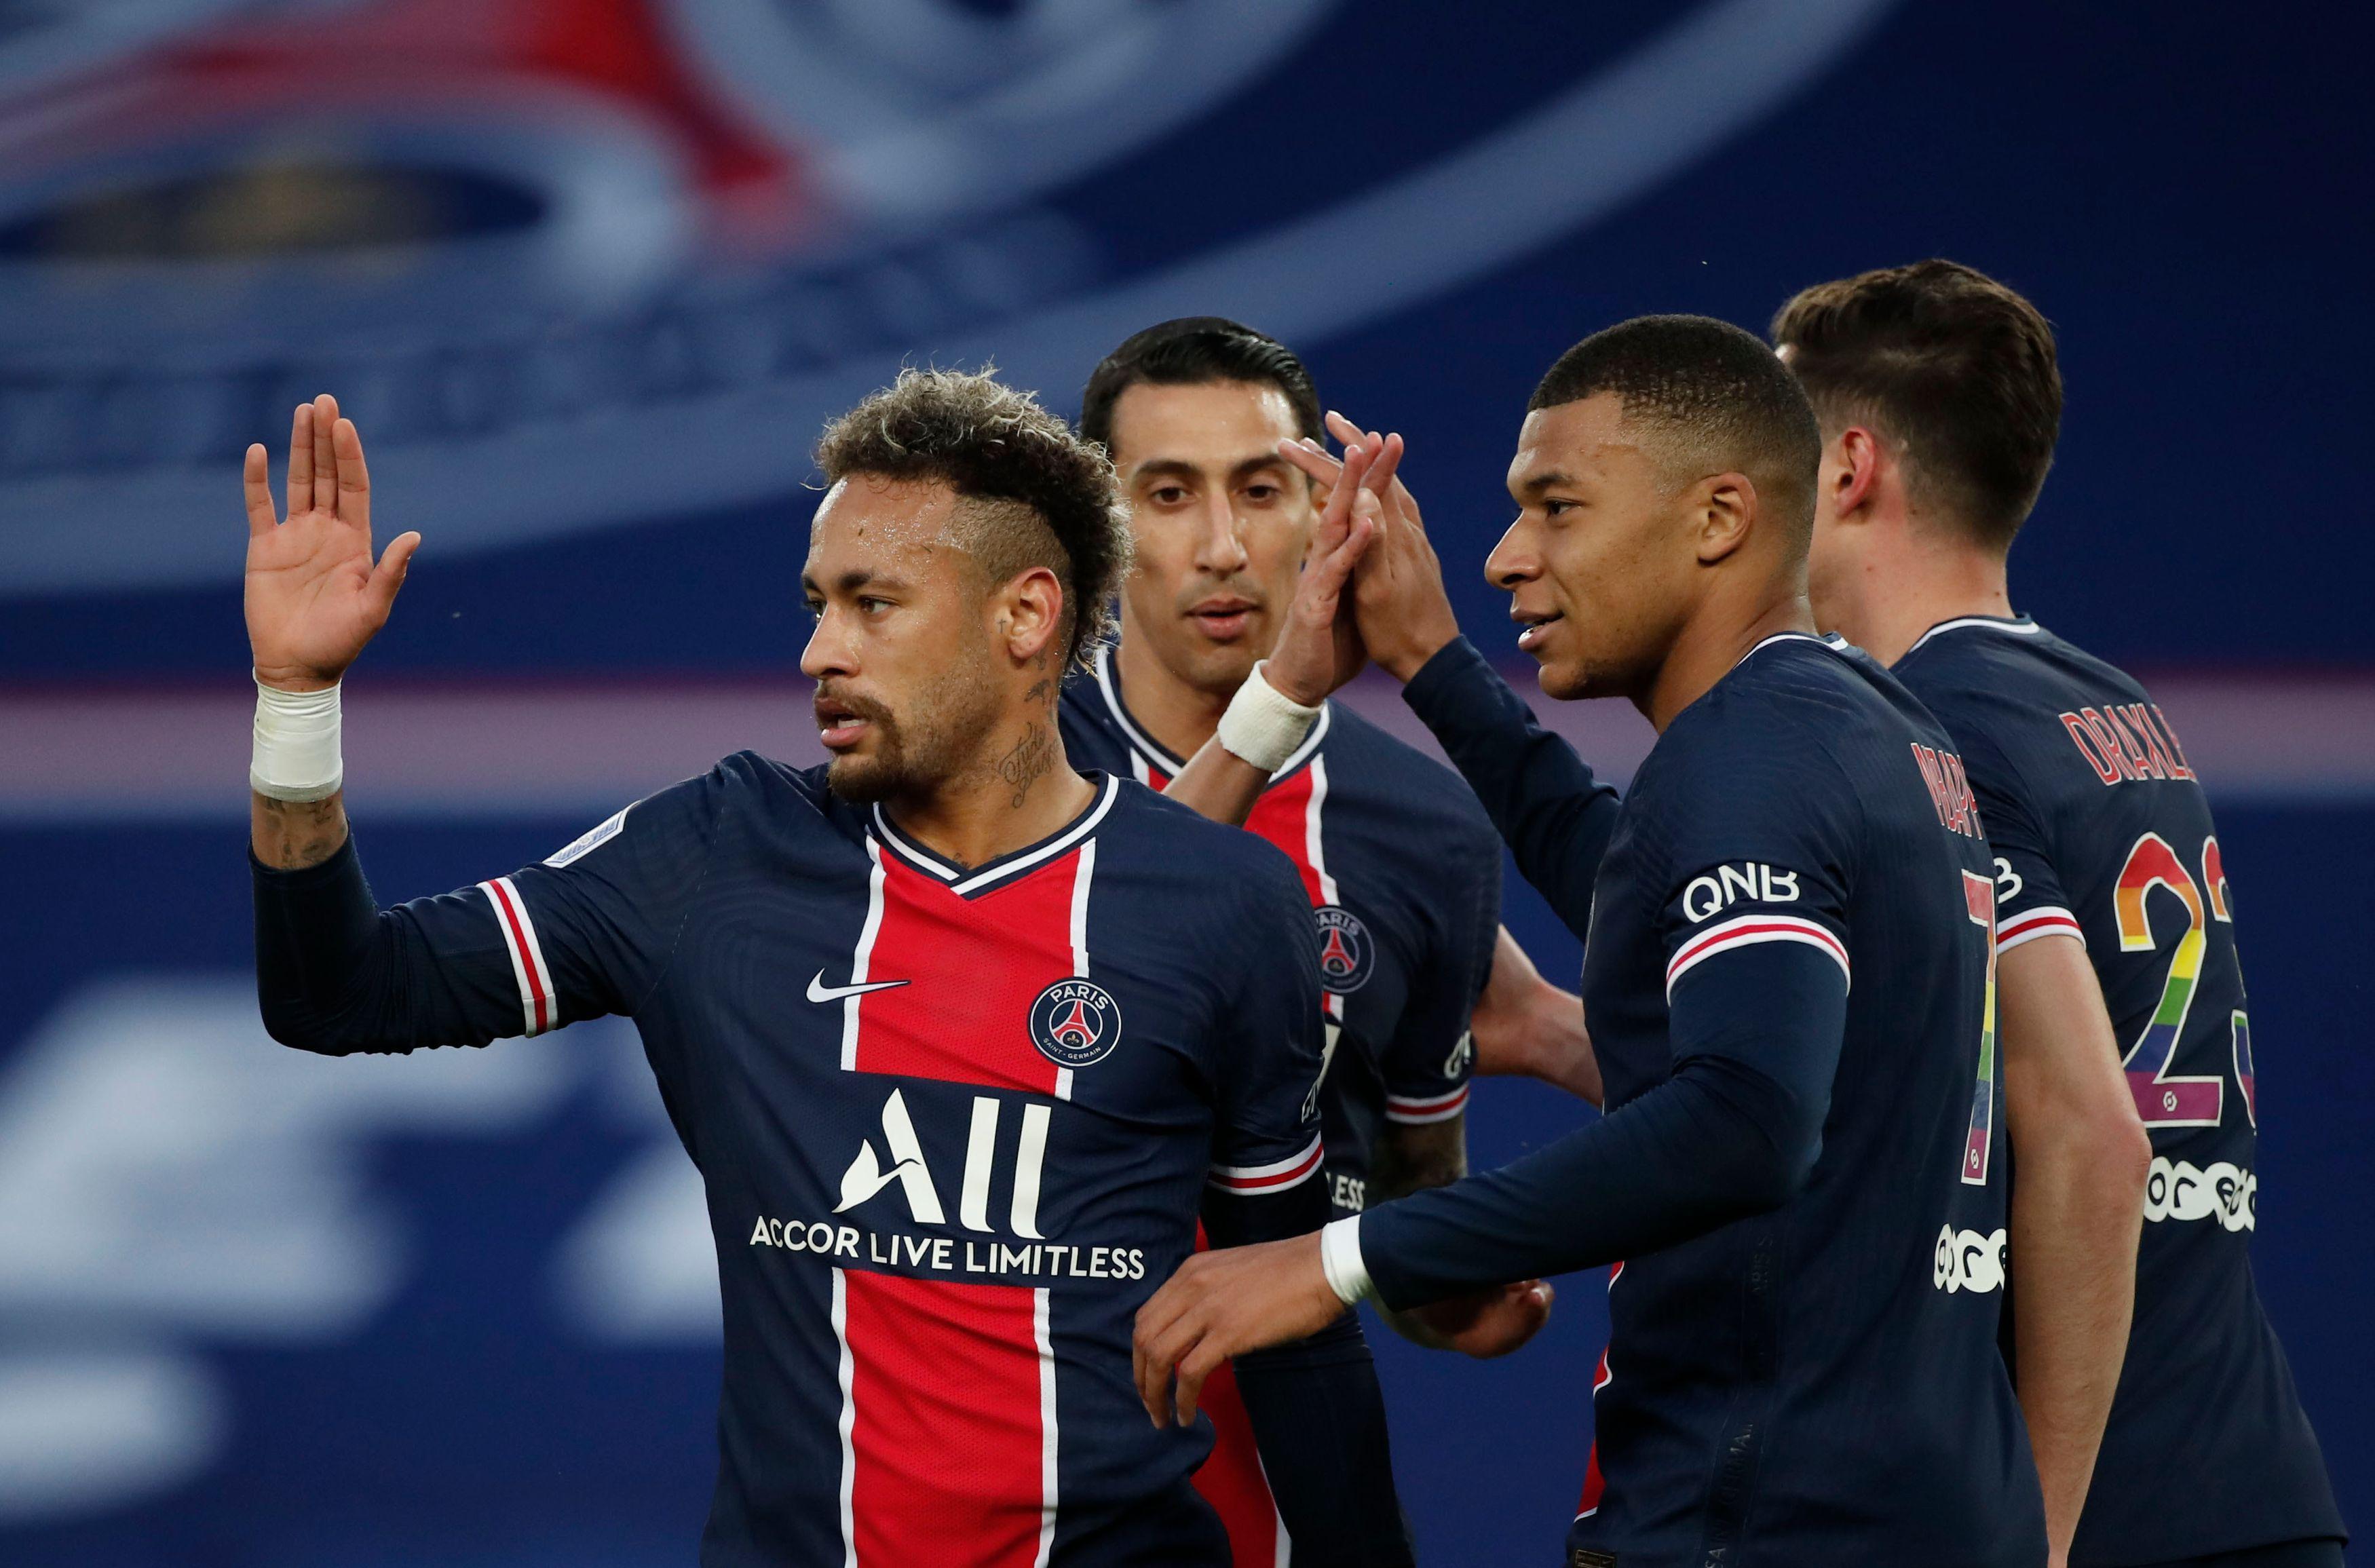 (ÖZET) PSG - Reims maç sonucu: 4-0